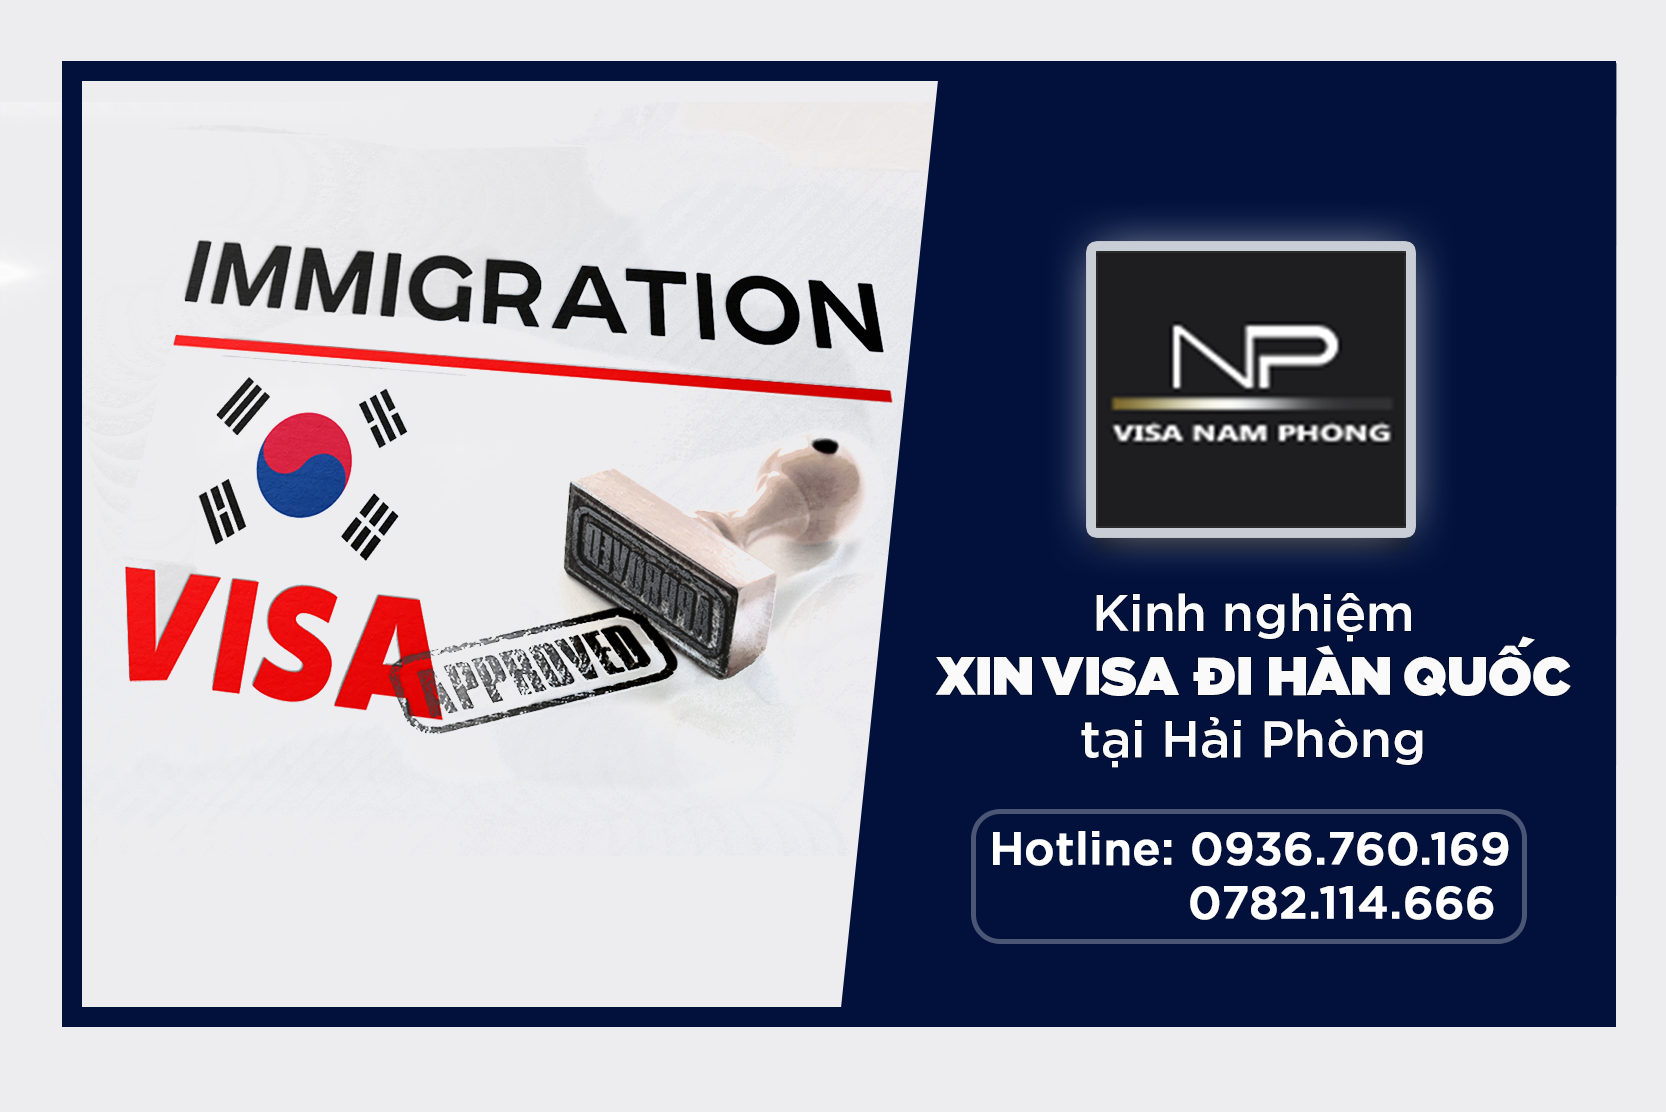 Kinh nghiệm xin visa đi Hàn Quốc tại Hải Phòng